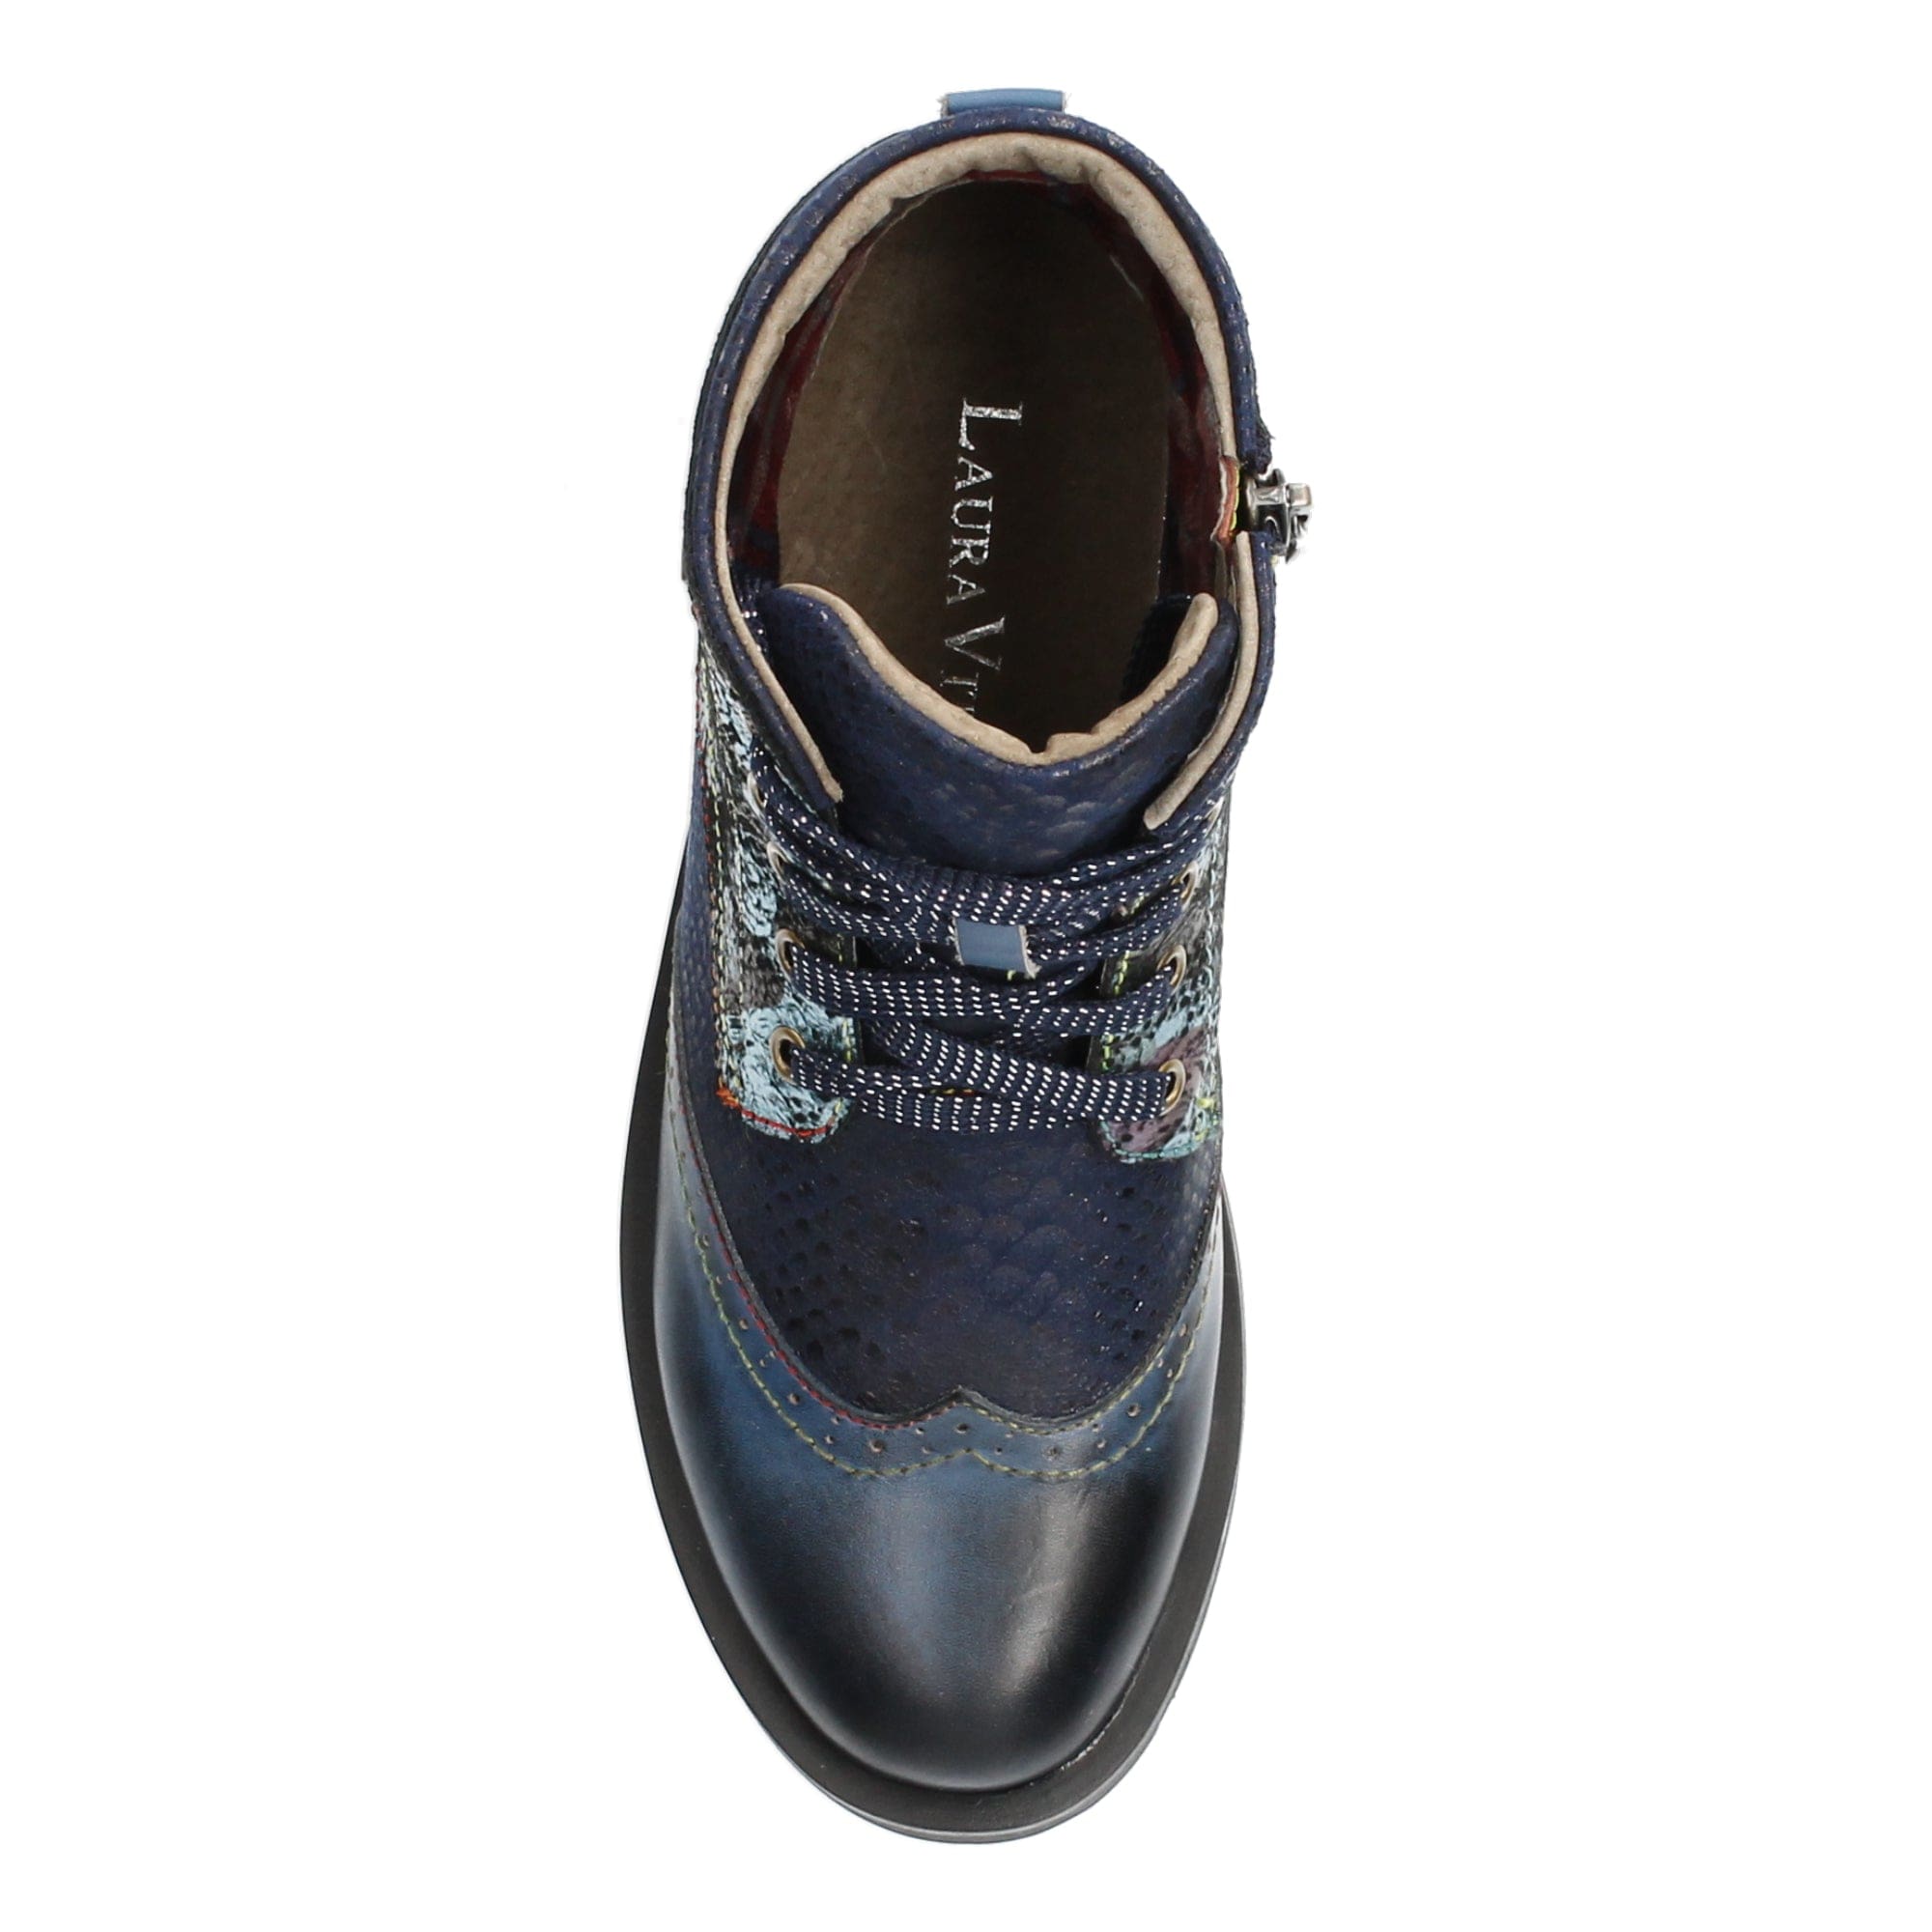 Shoe COCRAILO 04 - Boots